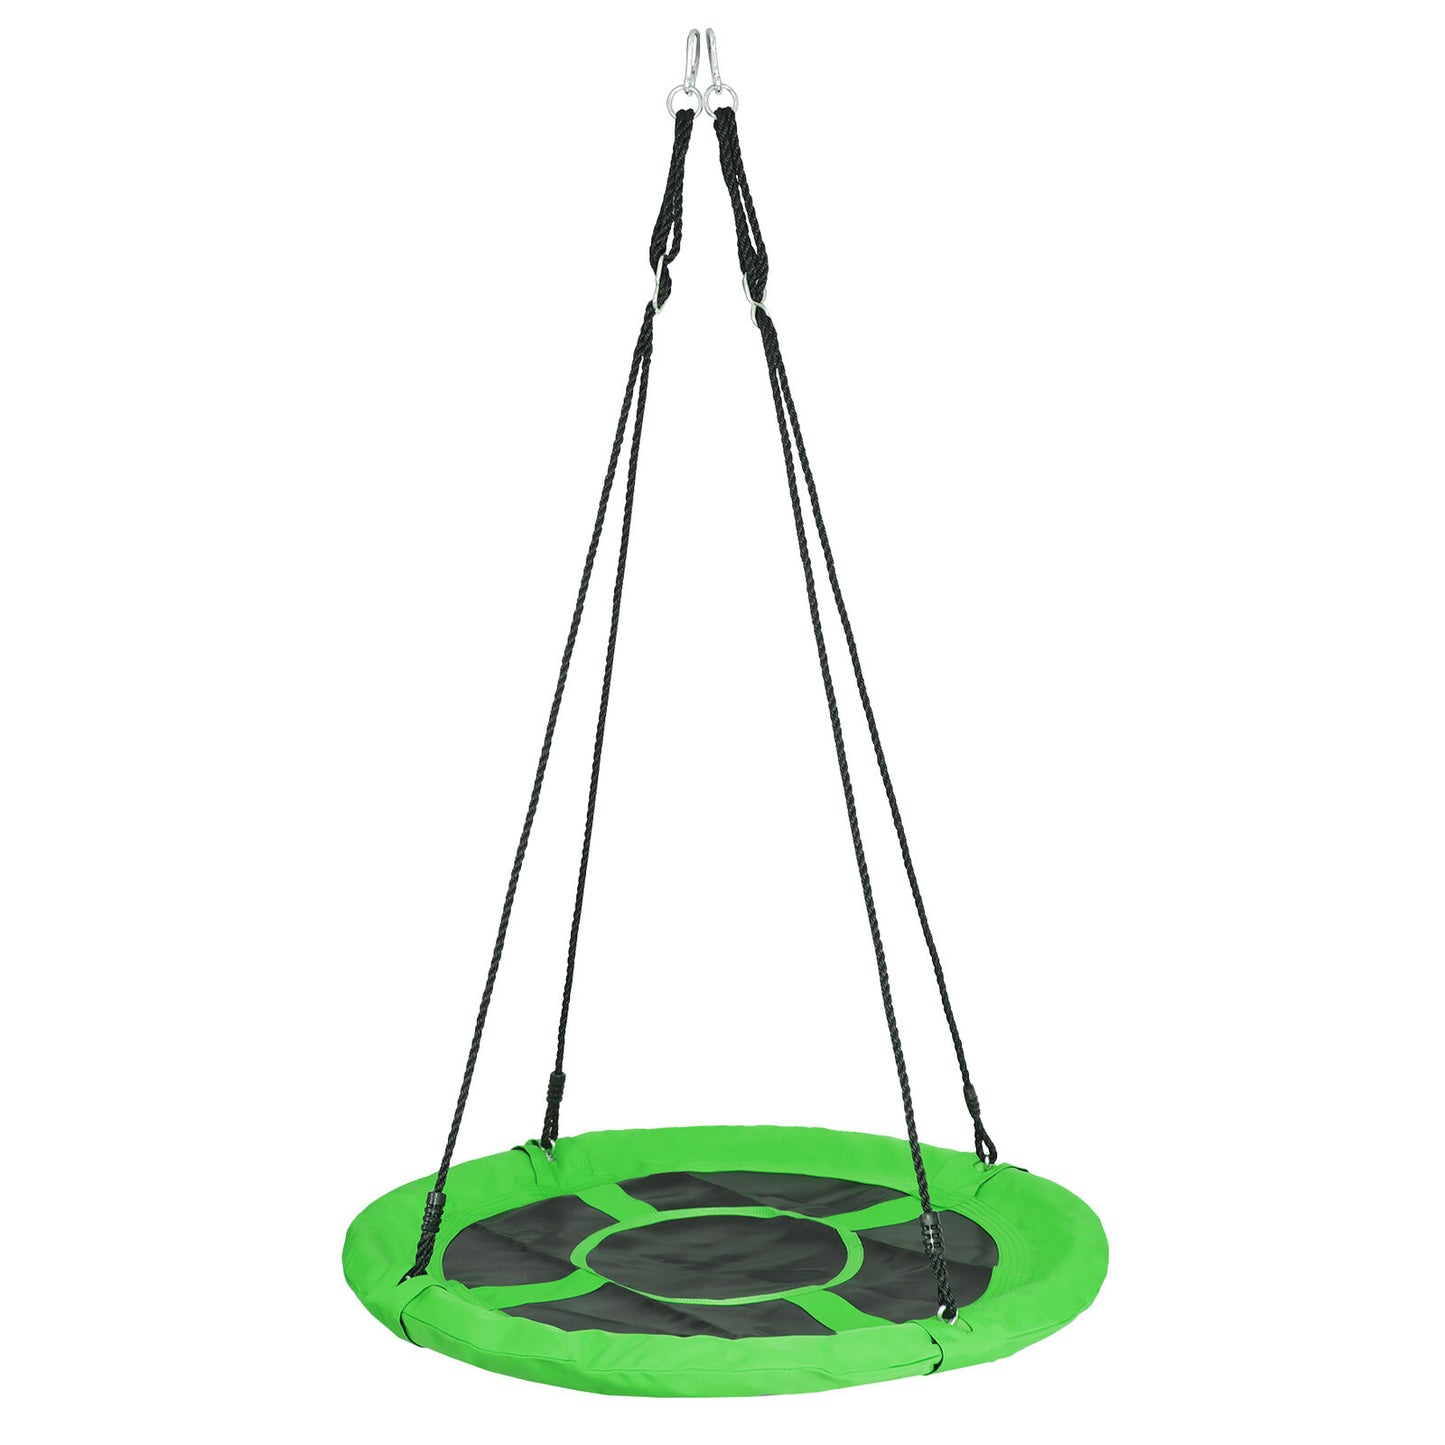 40" Waterproof Saucer Tree Swing Set Outdoor Round Swing for Children Green